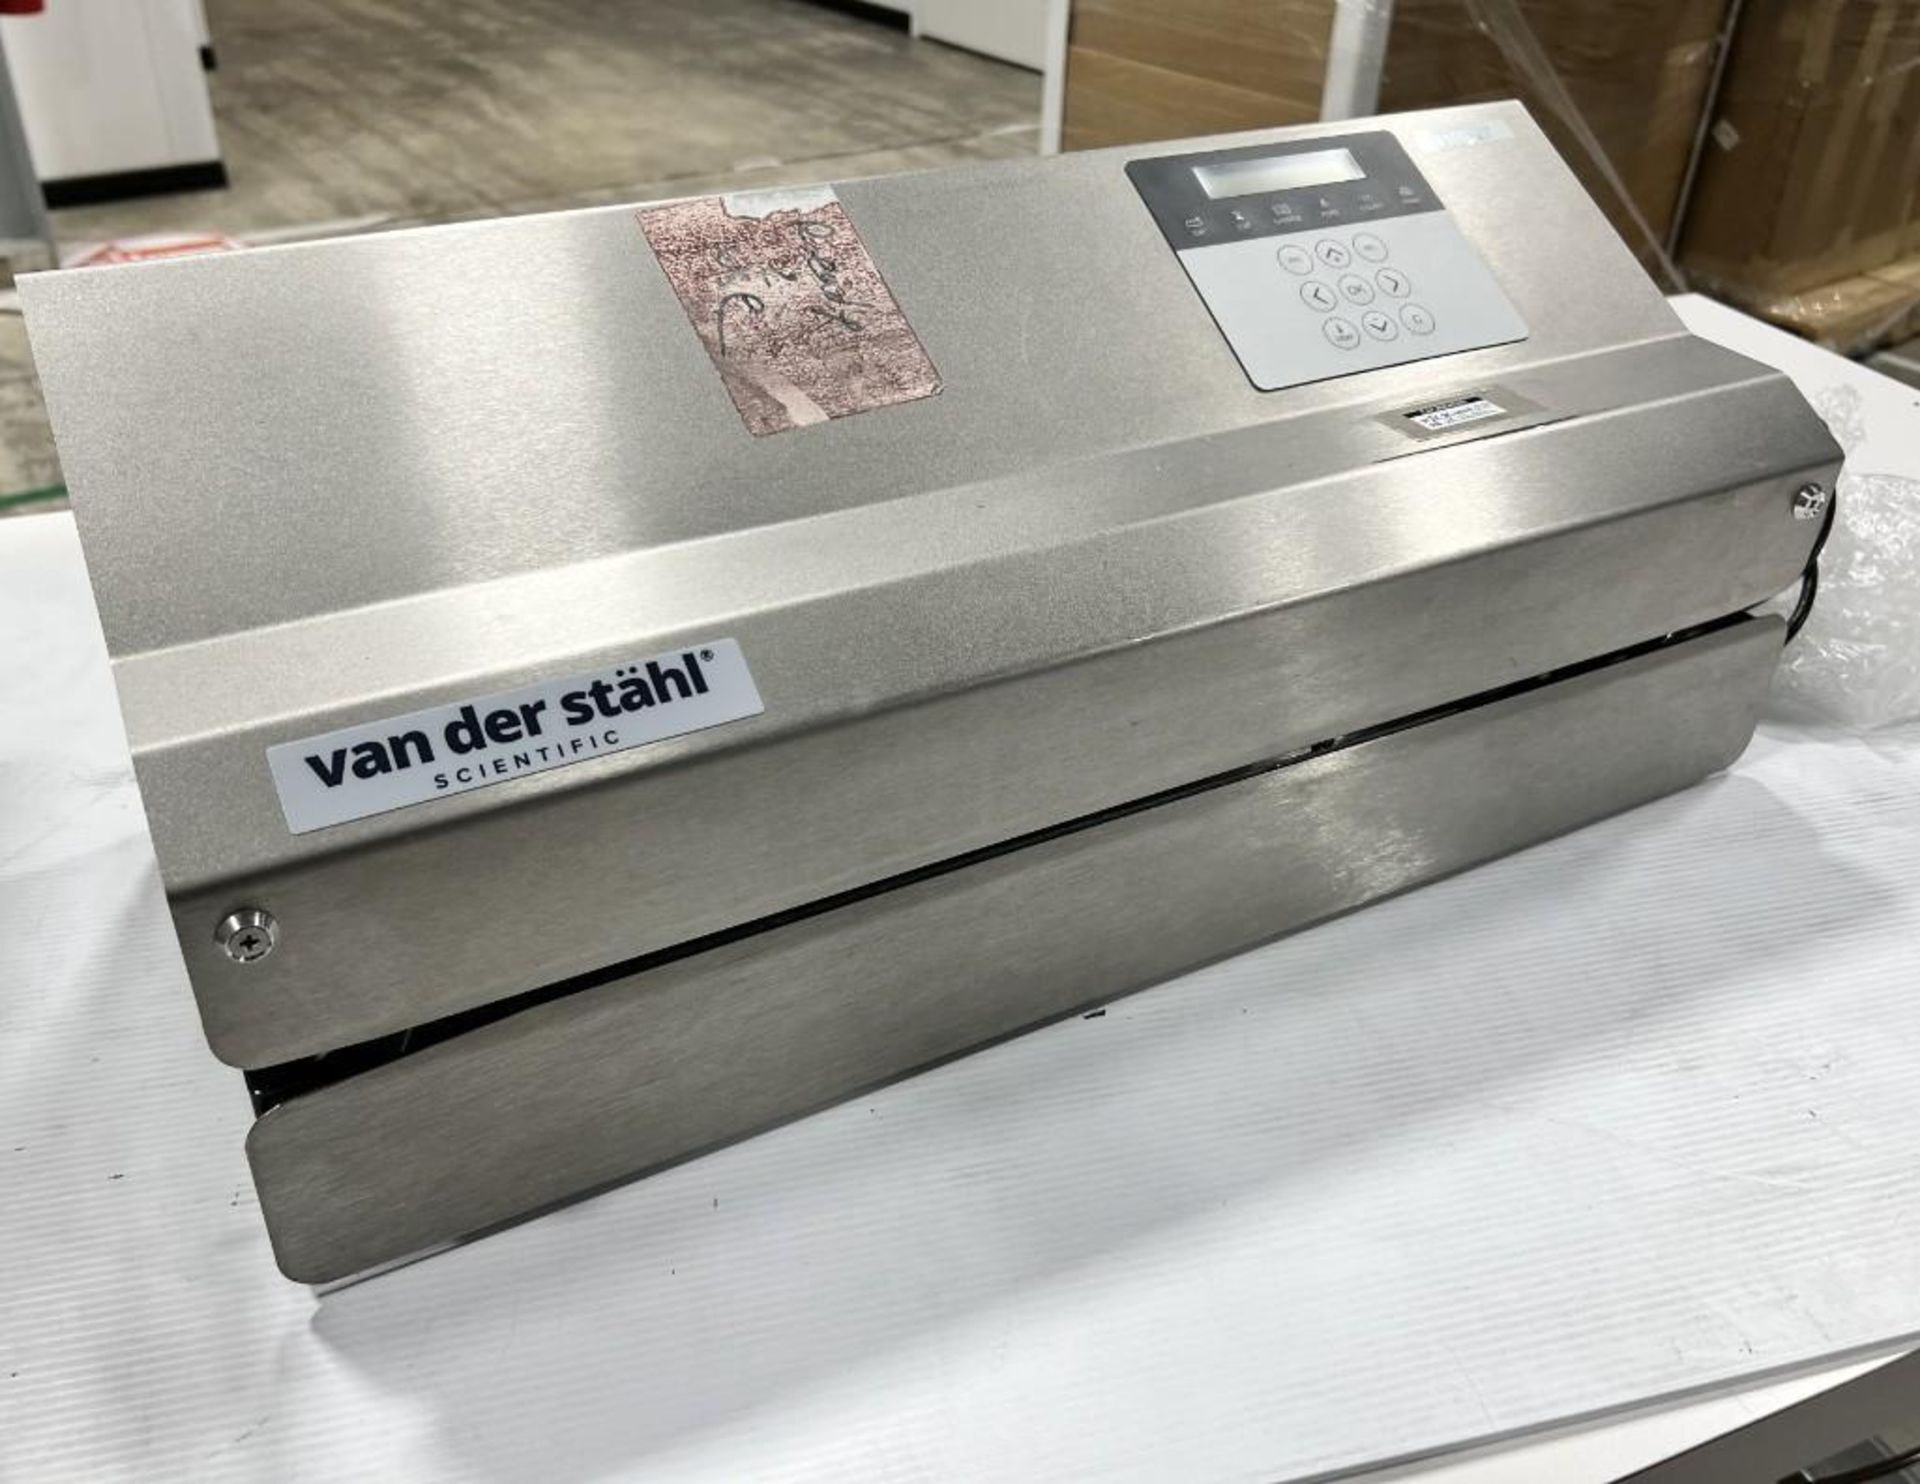 Van Der Stahl MD Series Pouch Sealer, Model MD-880, Serial# 523689, Built 05-2020.